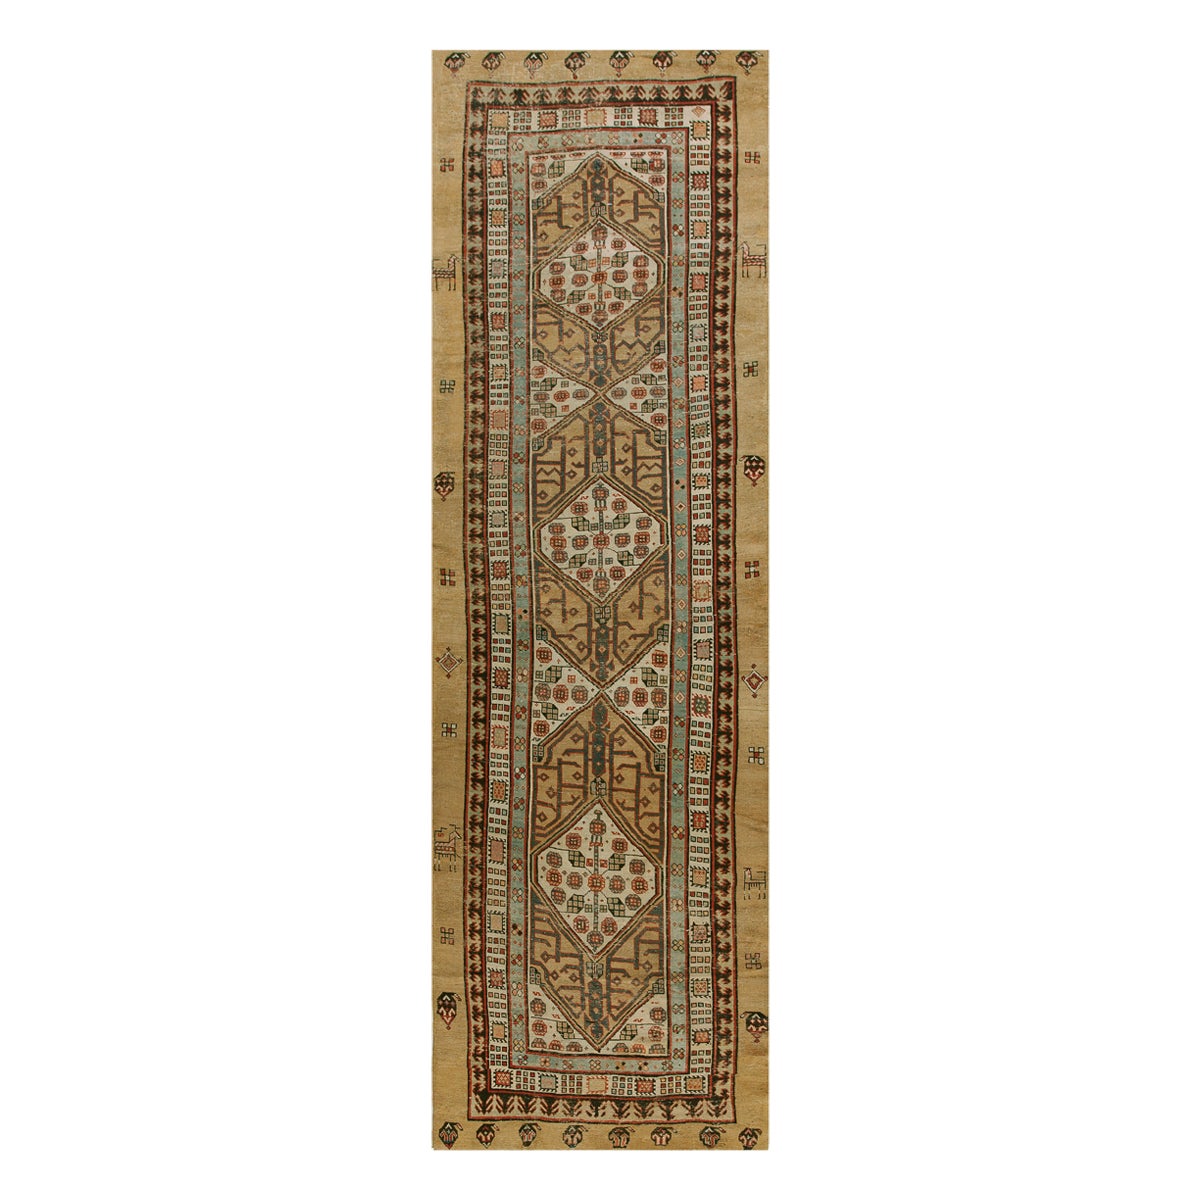 Persischer Serab-Läufer-Teppich aus dem späten 19. Jahrhundert (3'8" x 12'3" - 112 x 373)